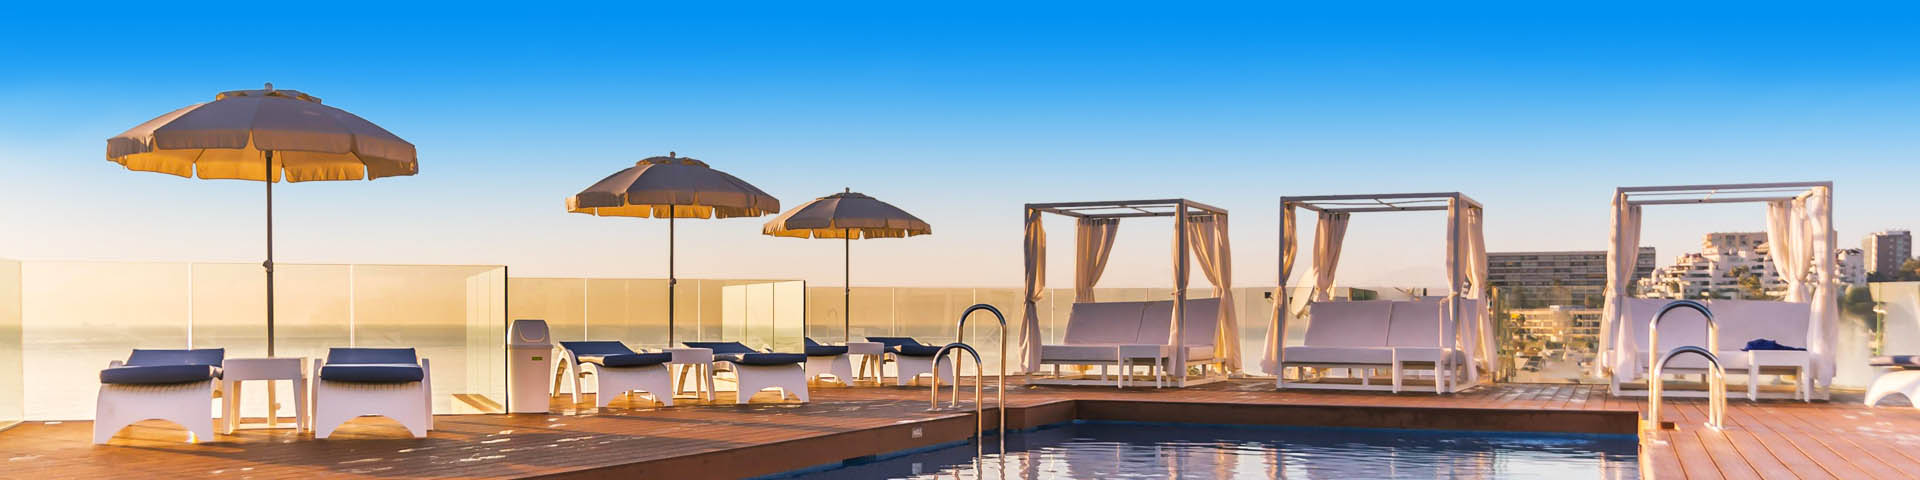 Heerlijk luxe hemelbed en ligbedjes aan een zwembad in Torremolinos